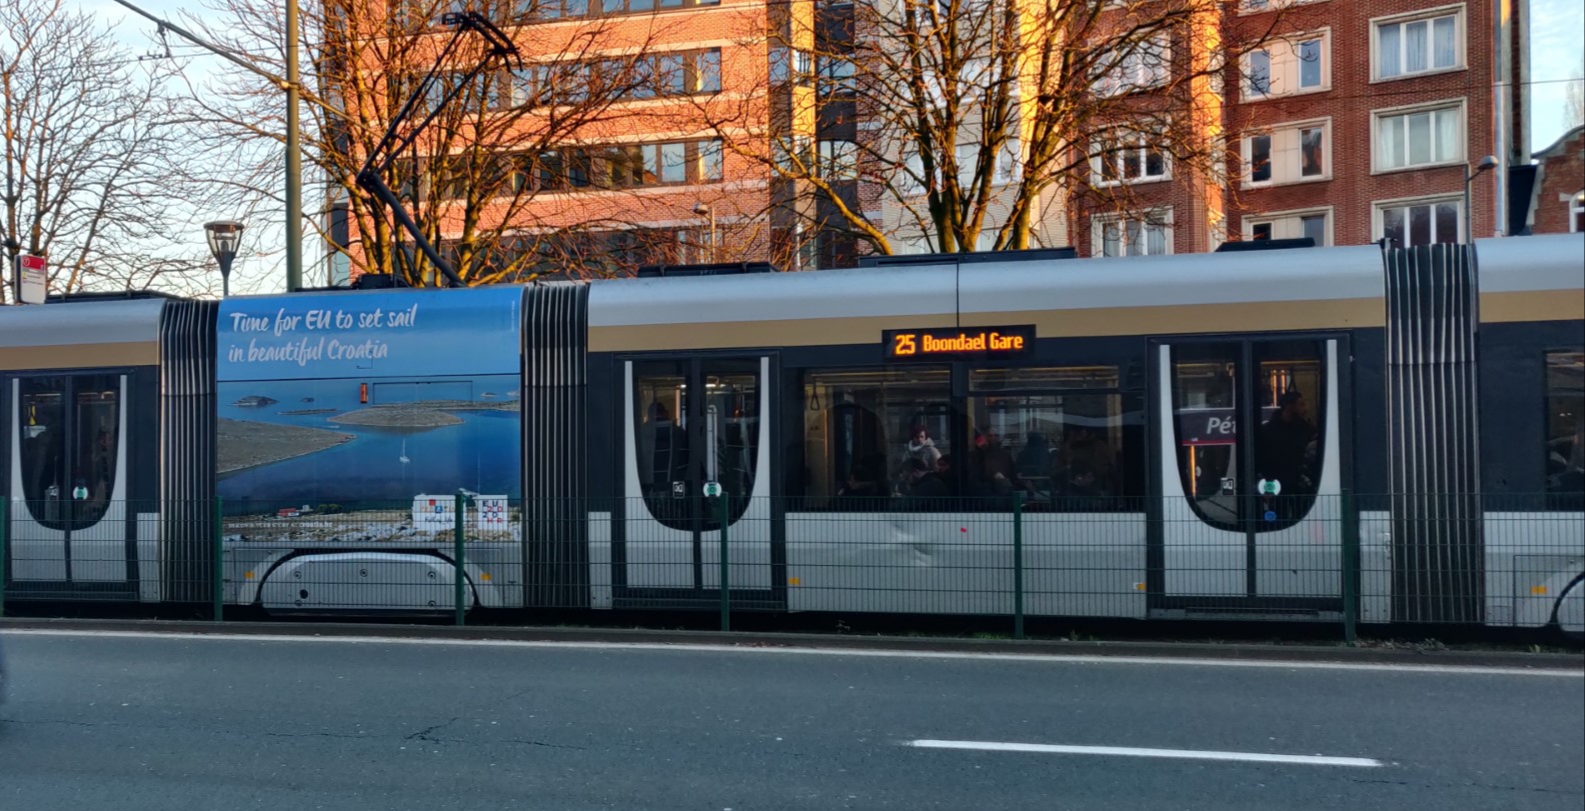 Oglas na tramvaju u Bruxellesu. Foto: HTZ